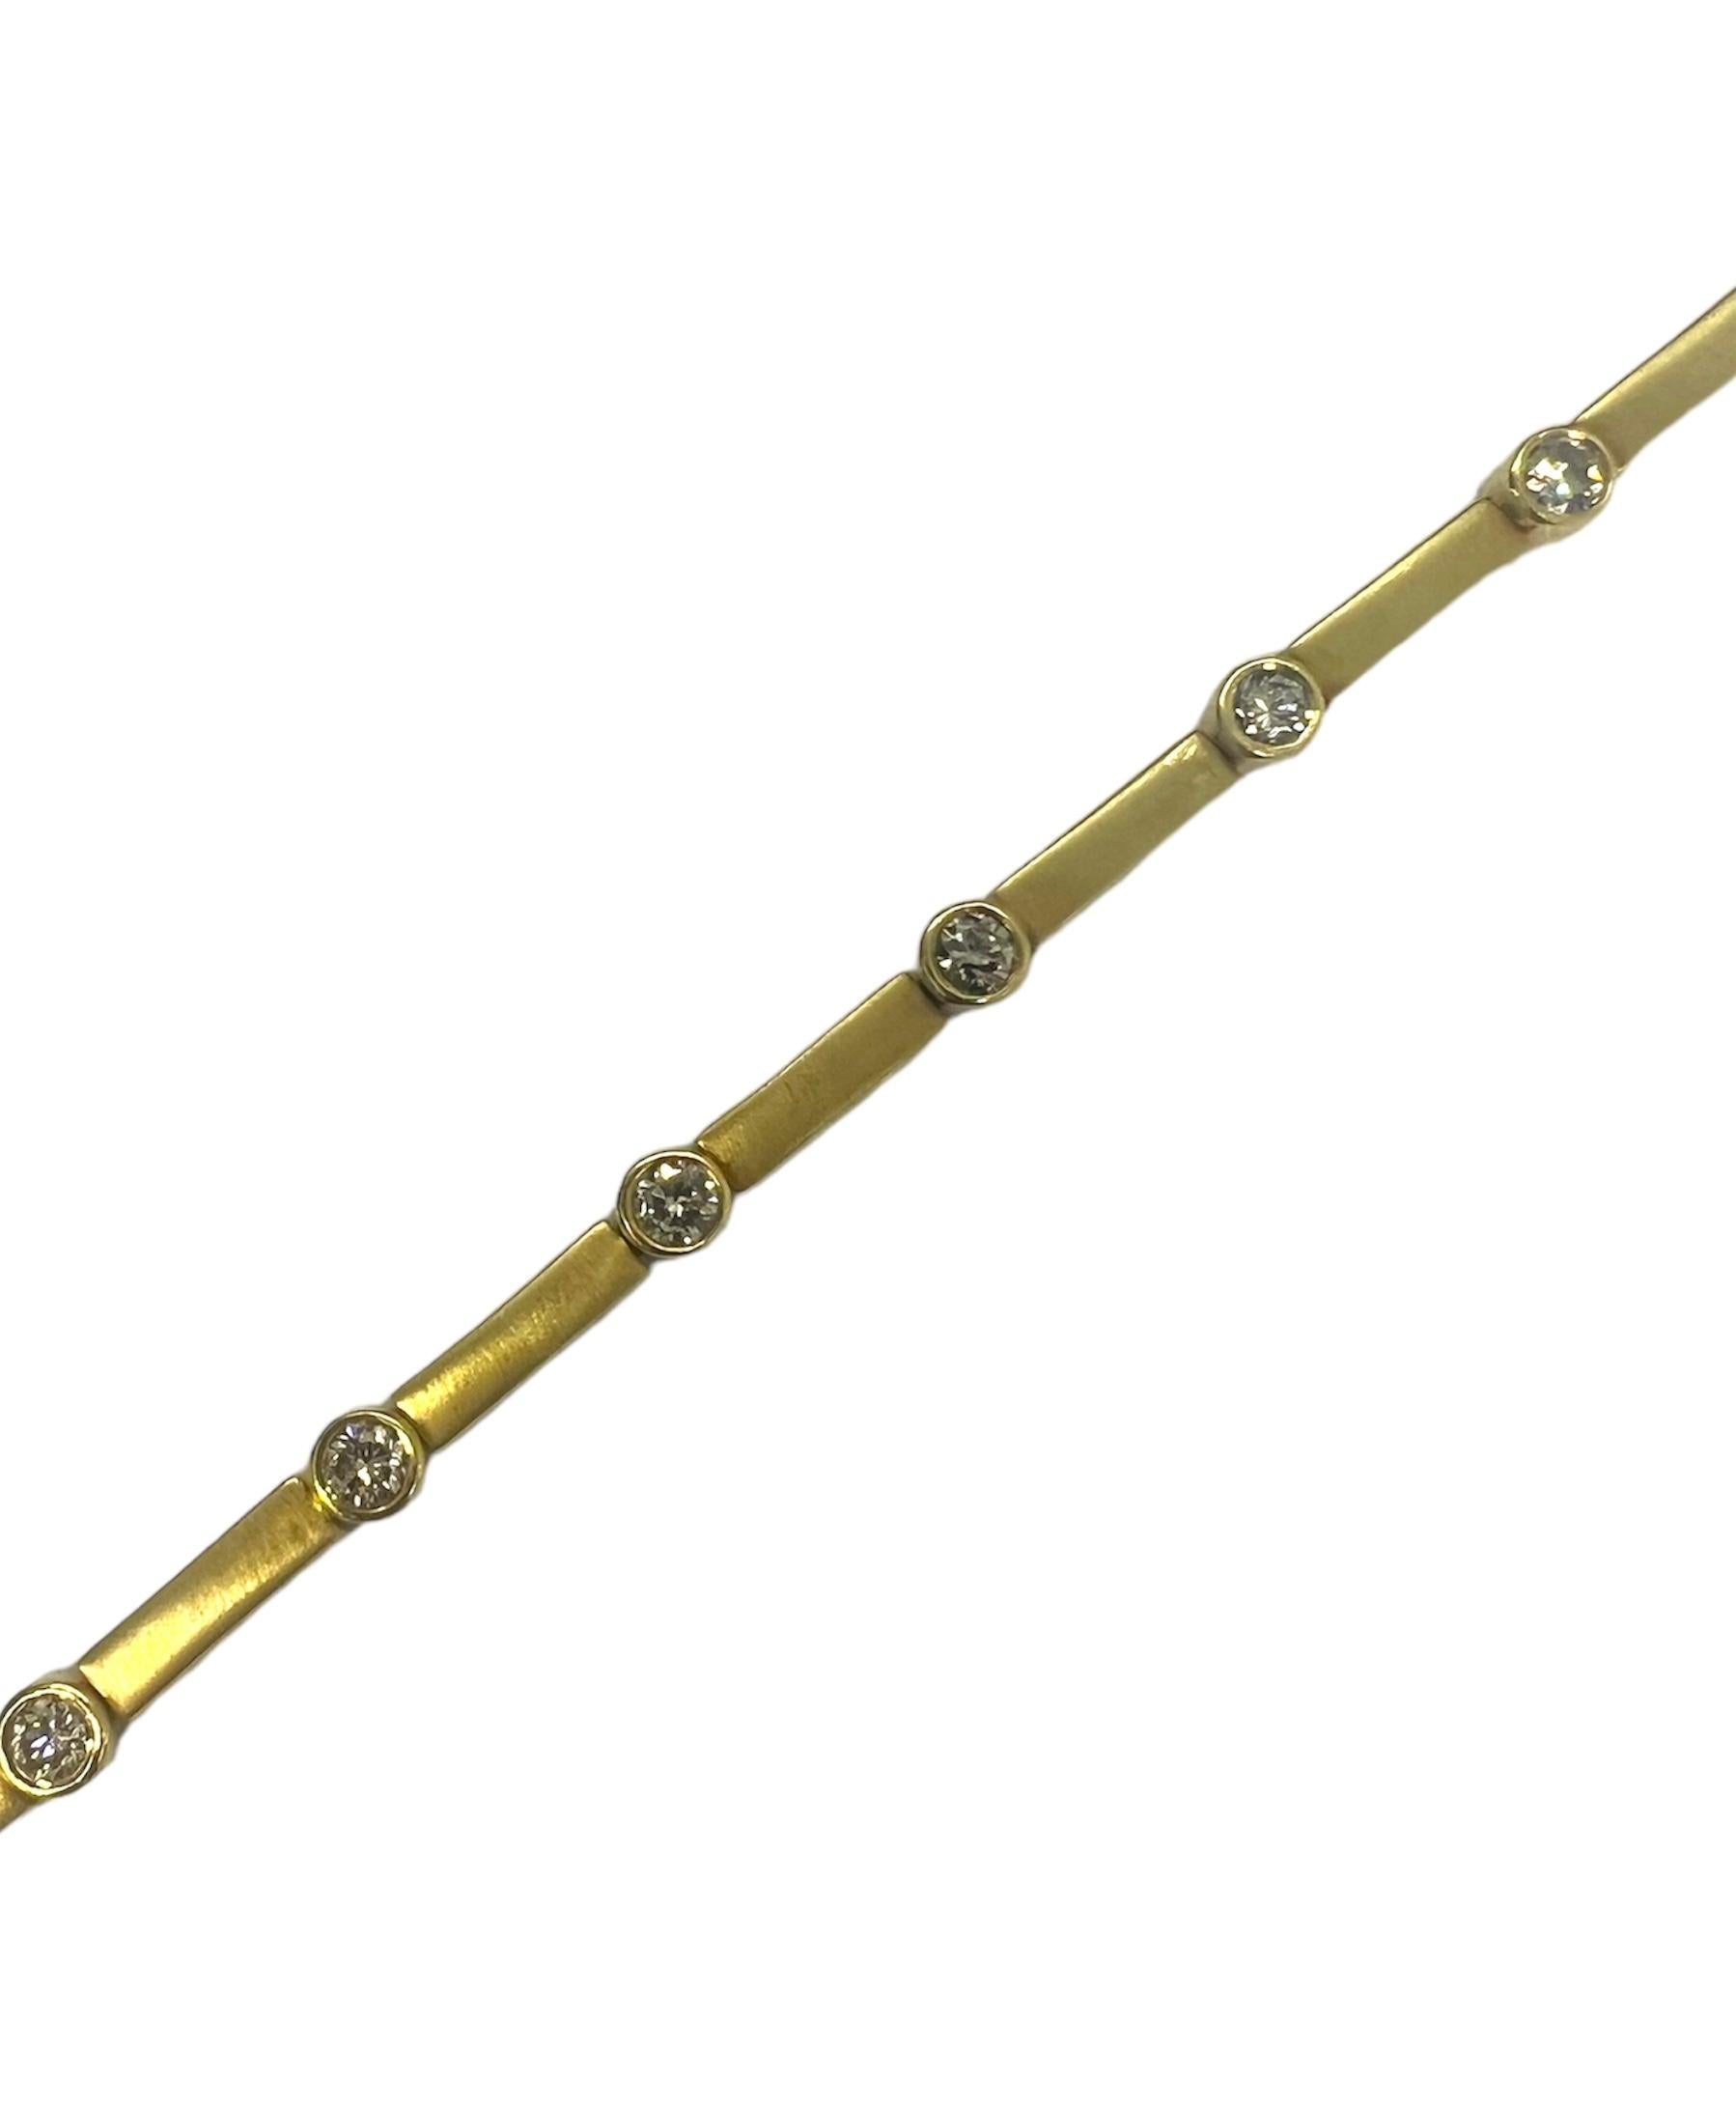 Ein Armband aus 14 Karat Gelbgold mit runden Diamanten.

Sophia D von Joseph Dardashti LTD ist seit 35 Jahren weltweit bekannt und lässt sich vom klassischen Art-Déco-Design inspirieren, das mit modernen Fertigungstechniken verschmilzt.
